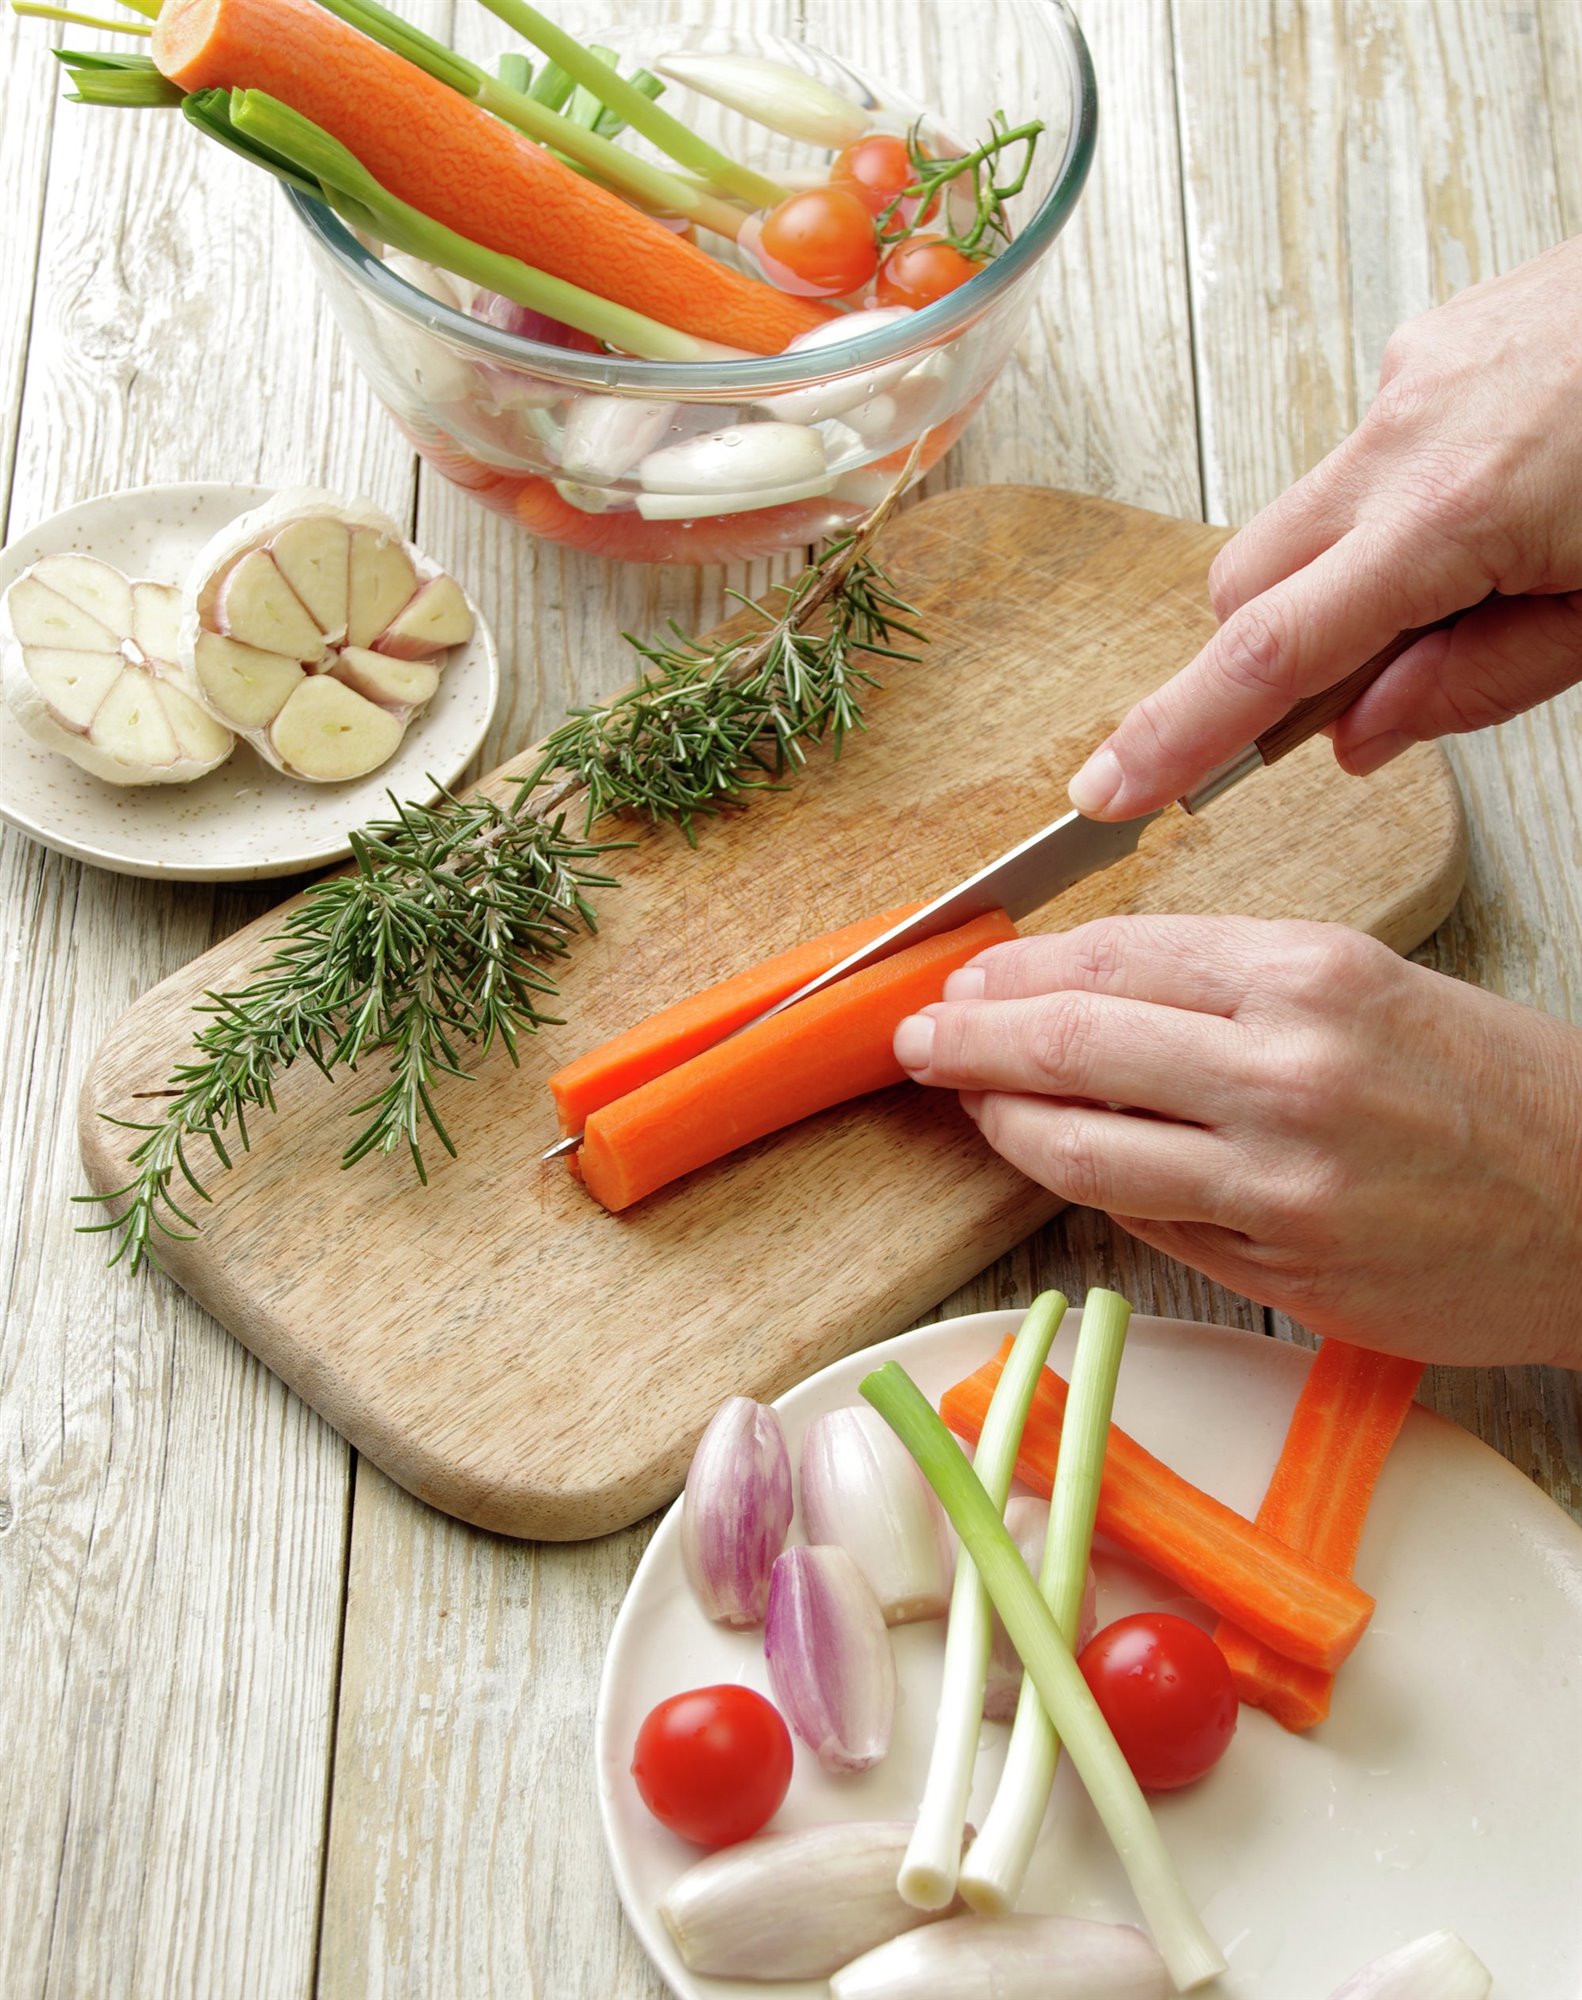 2. Prepara las verduras